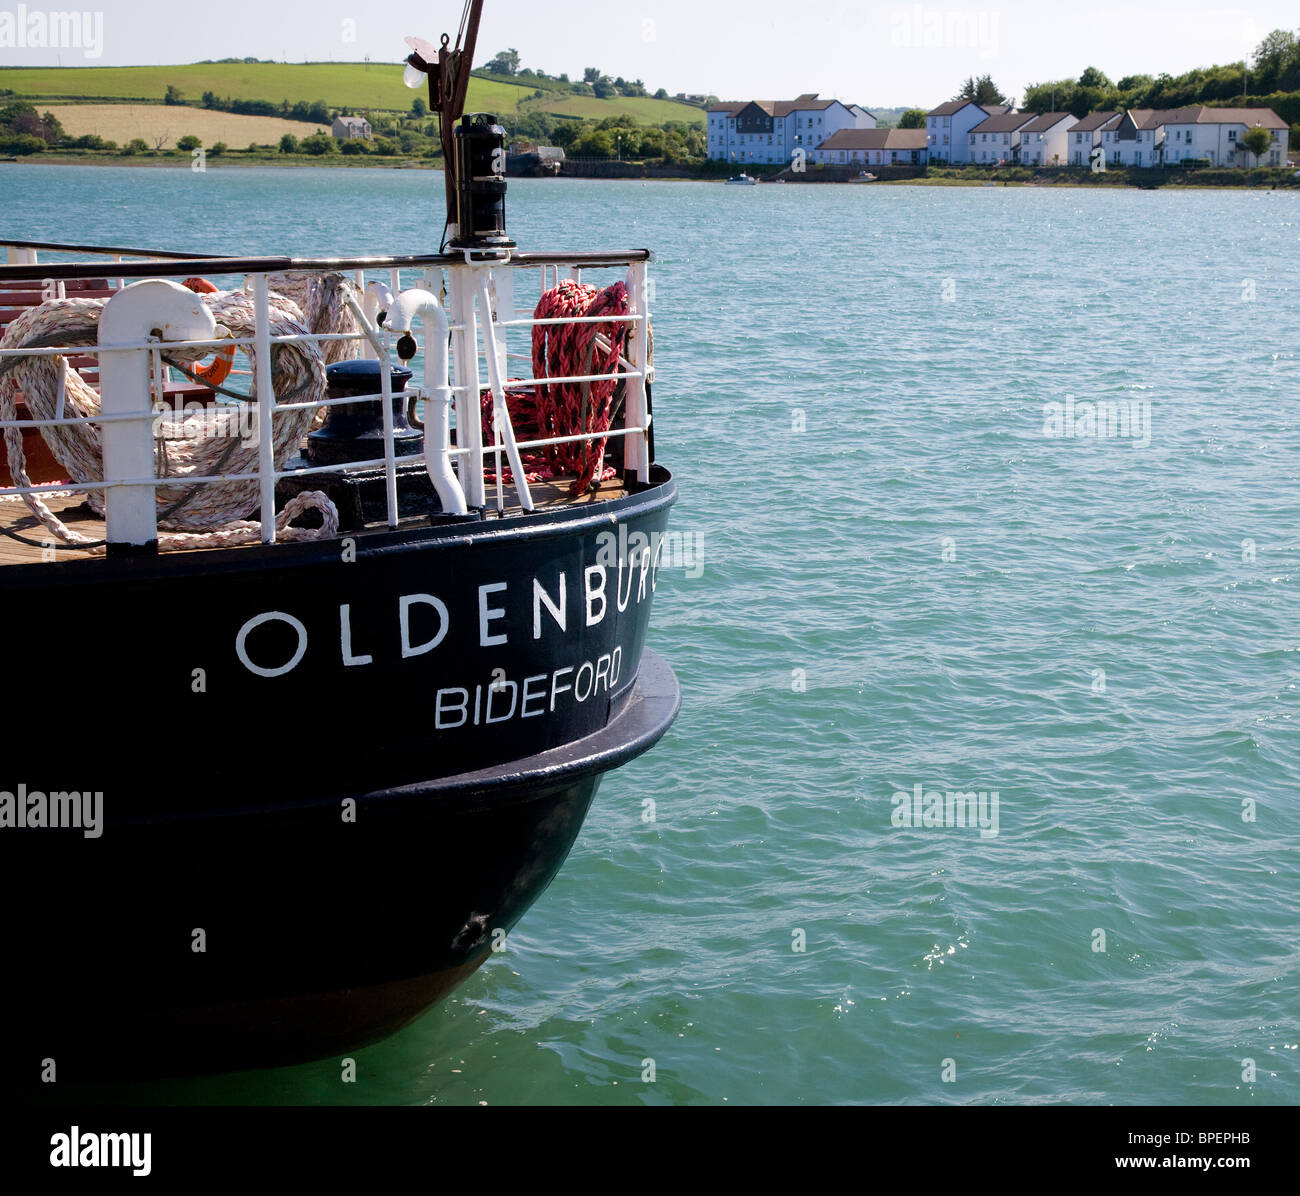 Achtern der SS Oldenburg im Dock Bideford, Devon - dieses Schiff Fähren Passagiere nach Lundy Island in den Bristolkanal Stockfoto